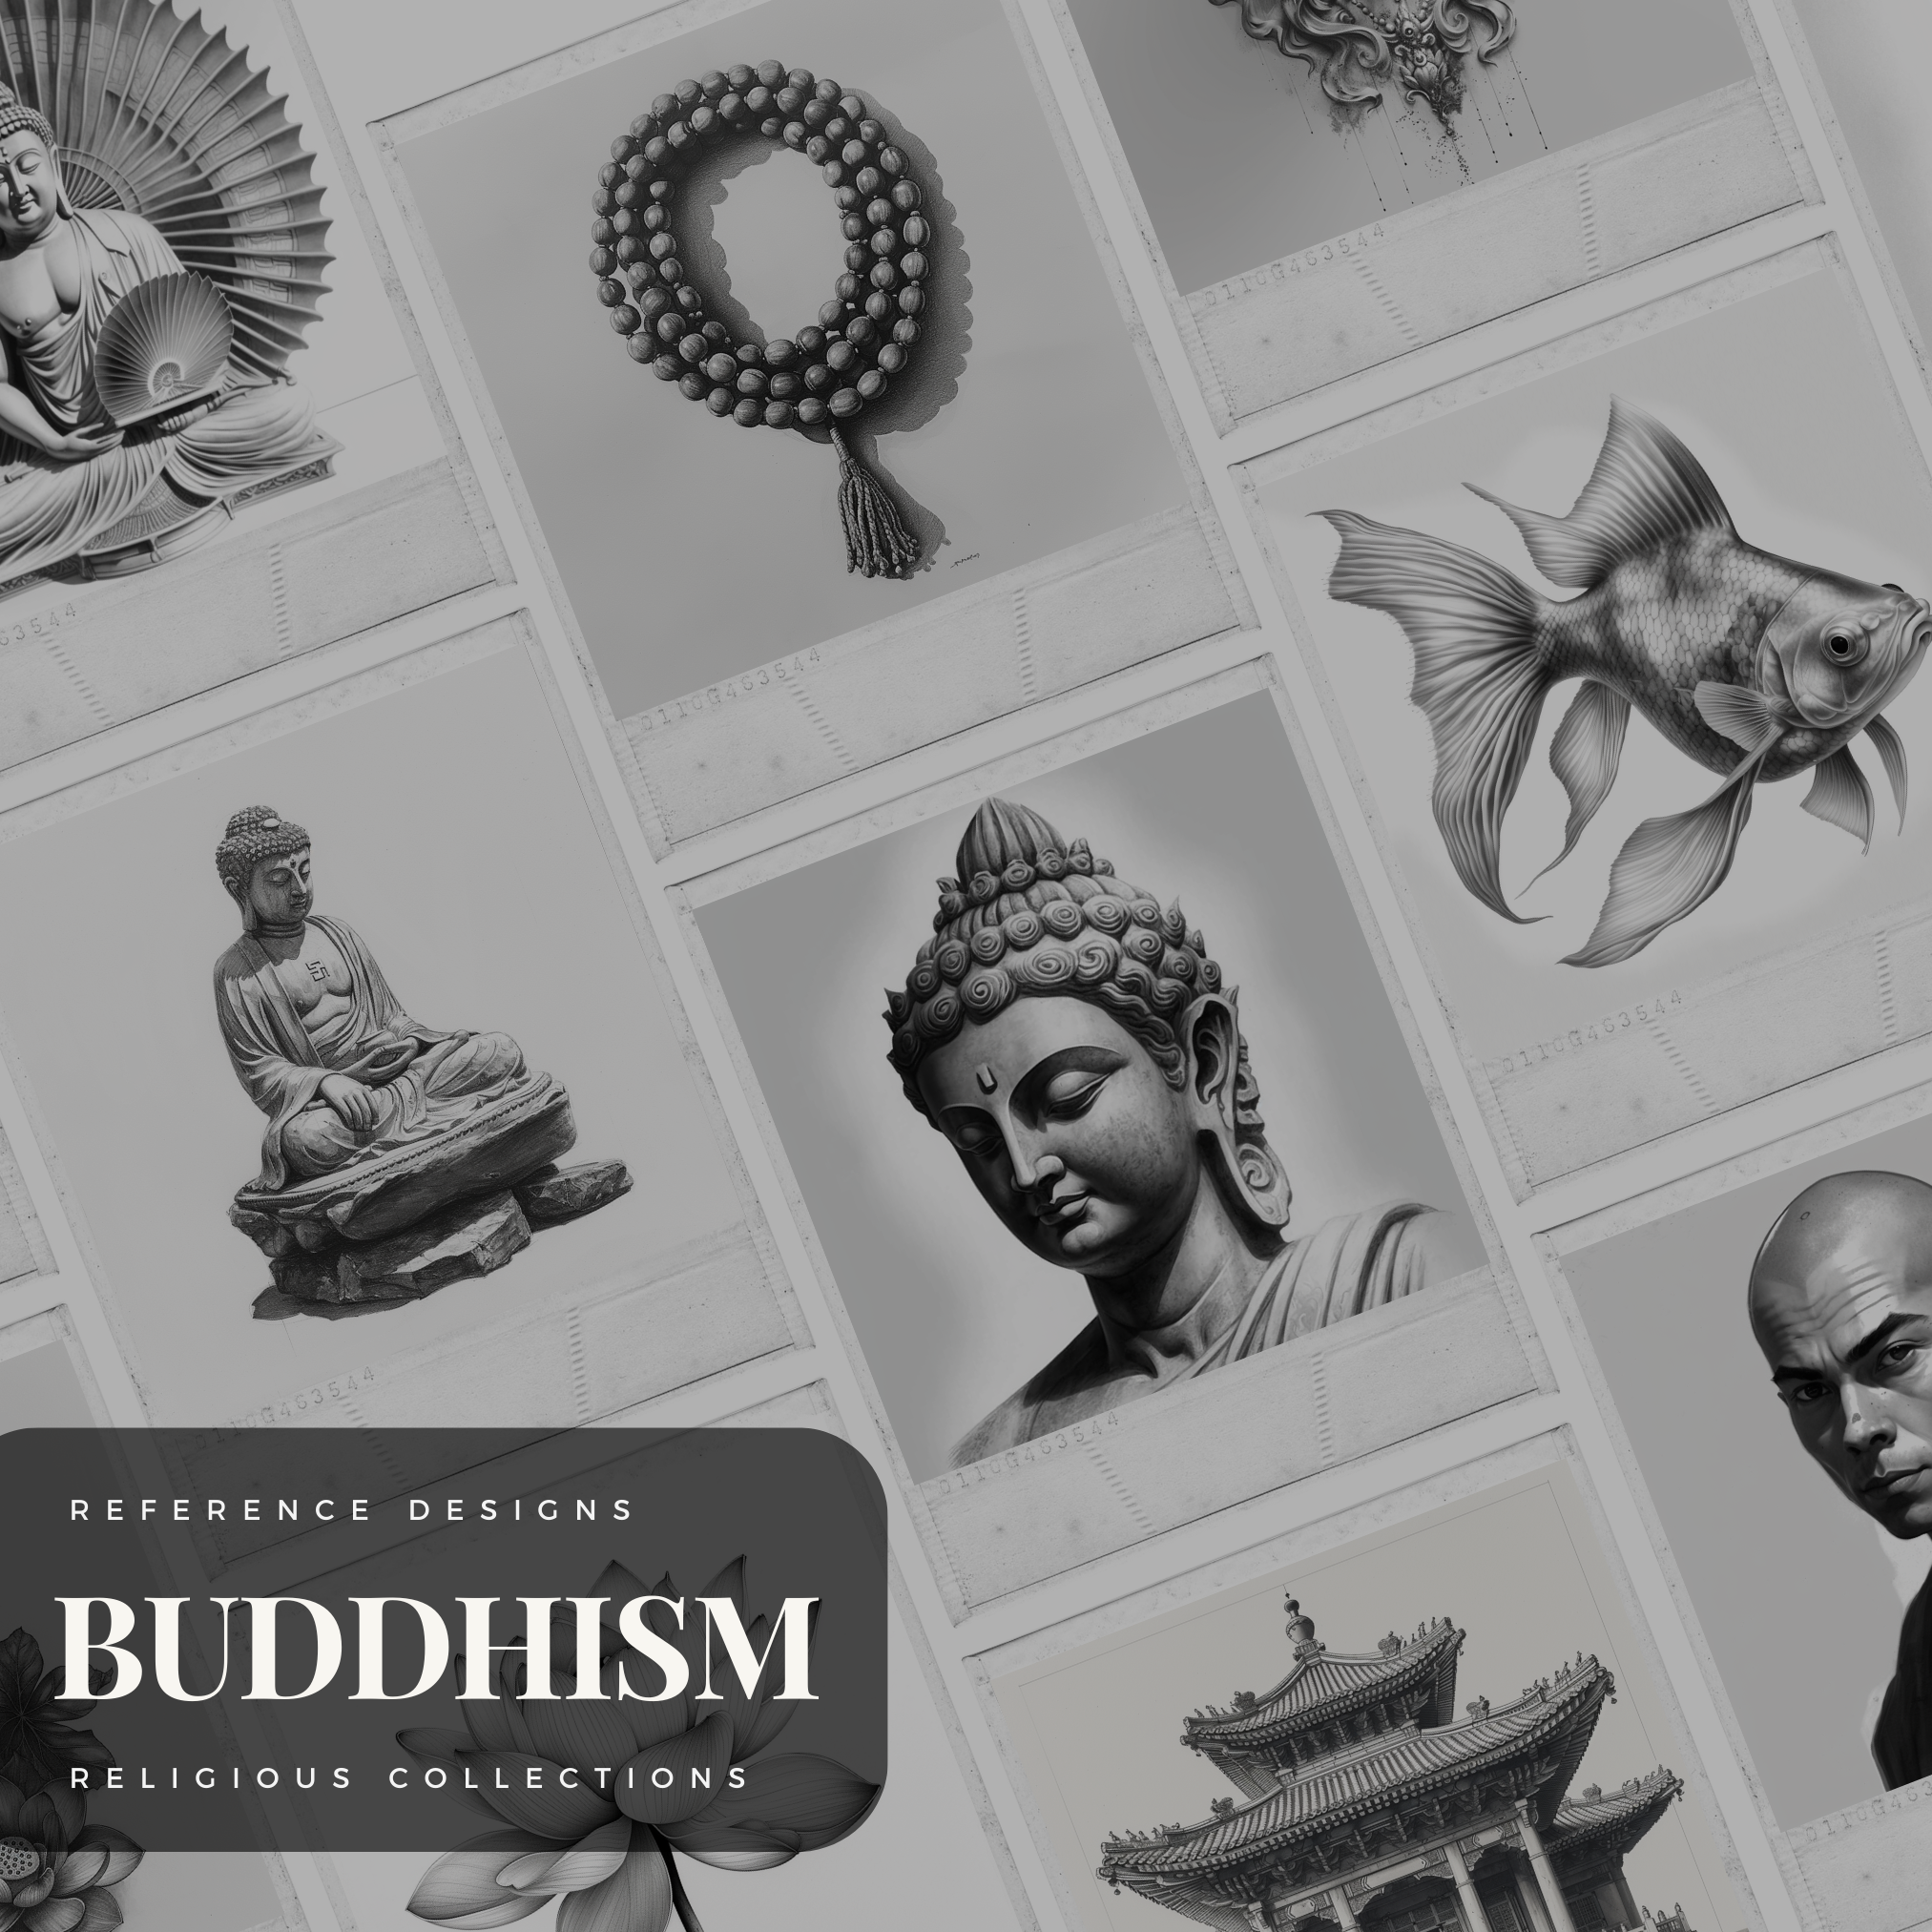 Colección de diseño digital de budismo: 100 imágenes de Procreate y Sketchbook